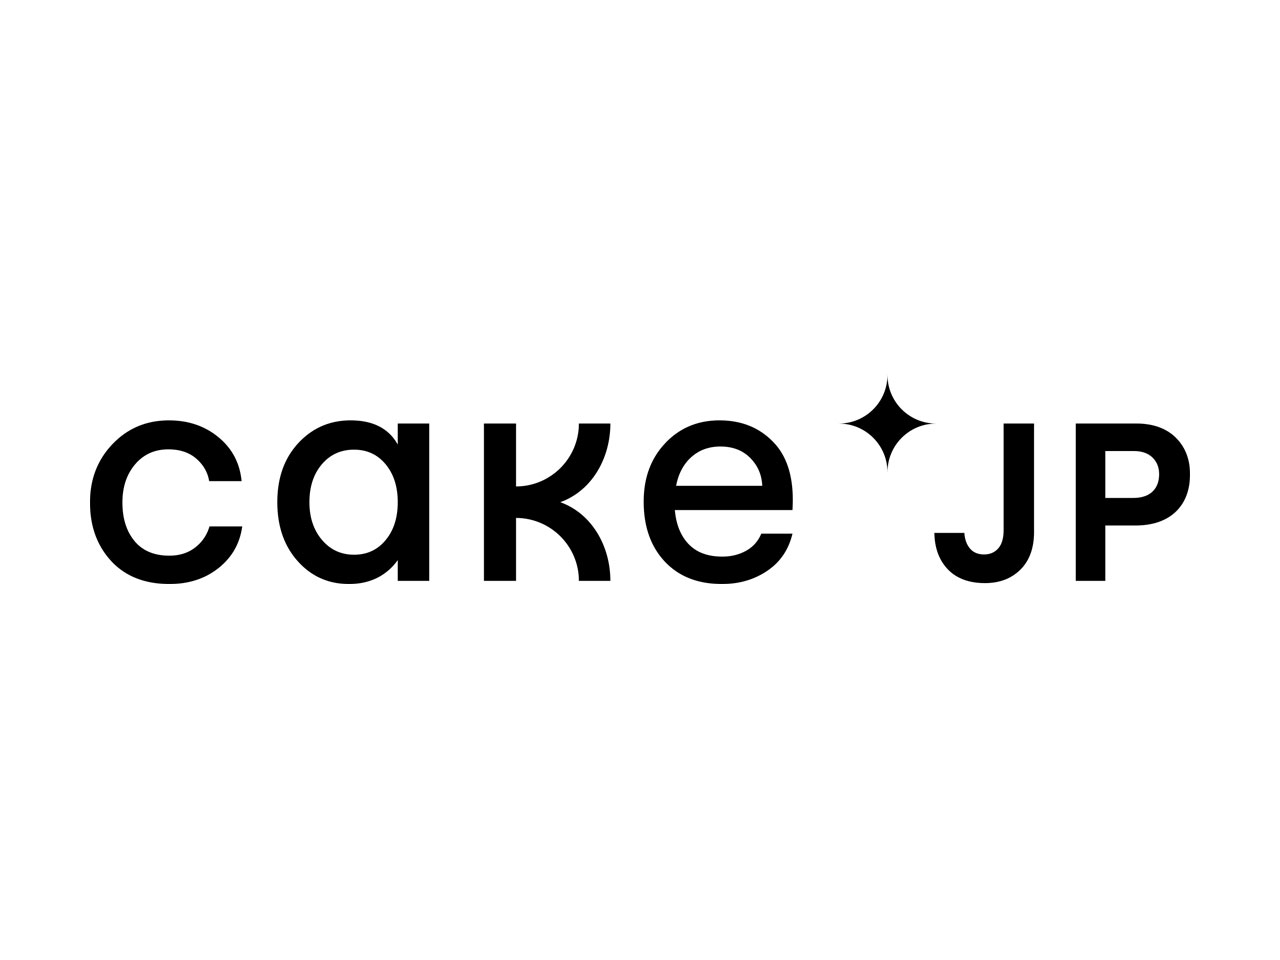 同社は、ケーキ・スイーツのECサイト『Cake.jp』を運営する会社だ。